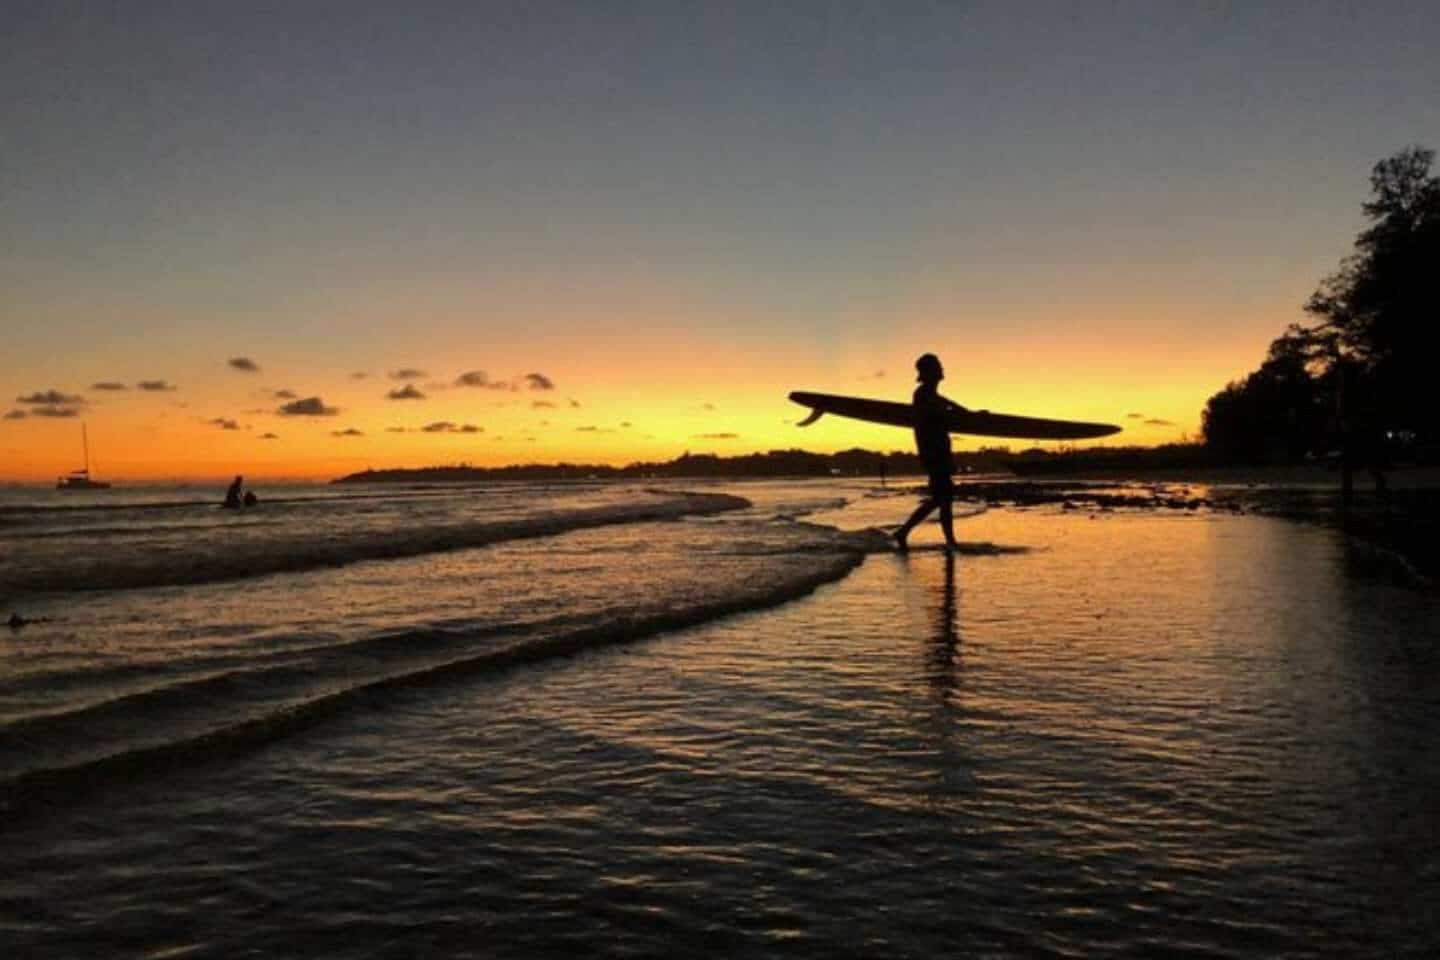 Surfing during sunset or sunrise in Sri Lanka